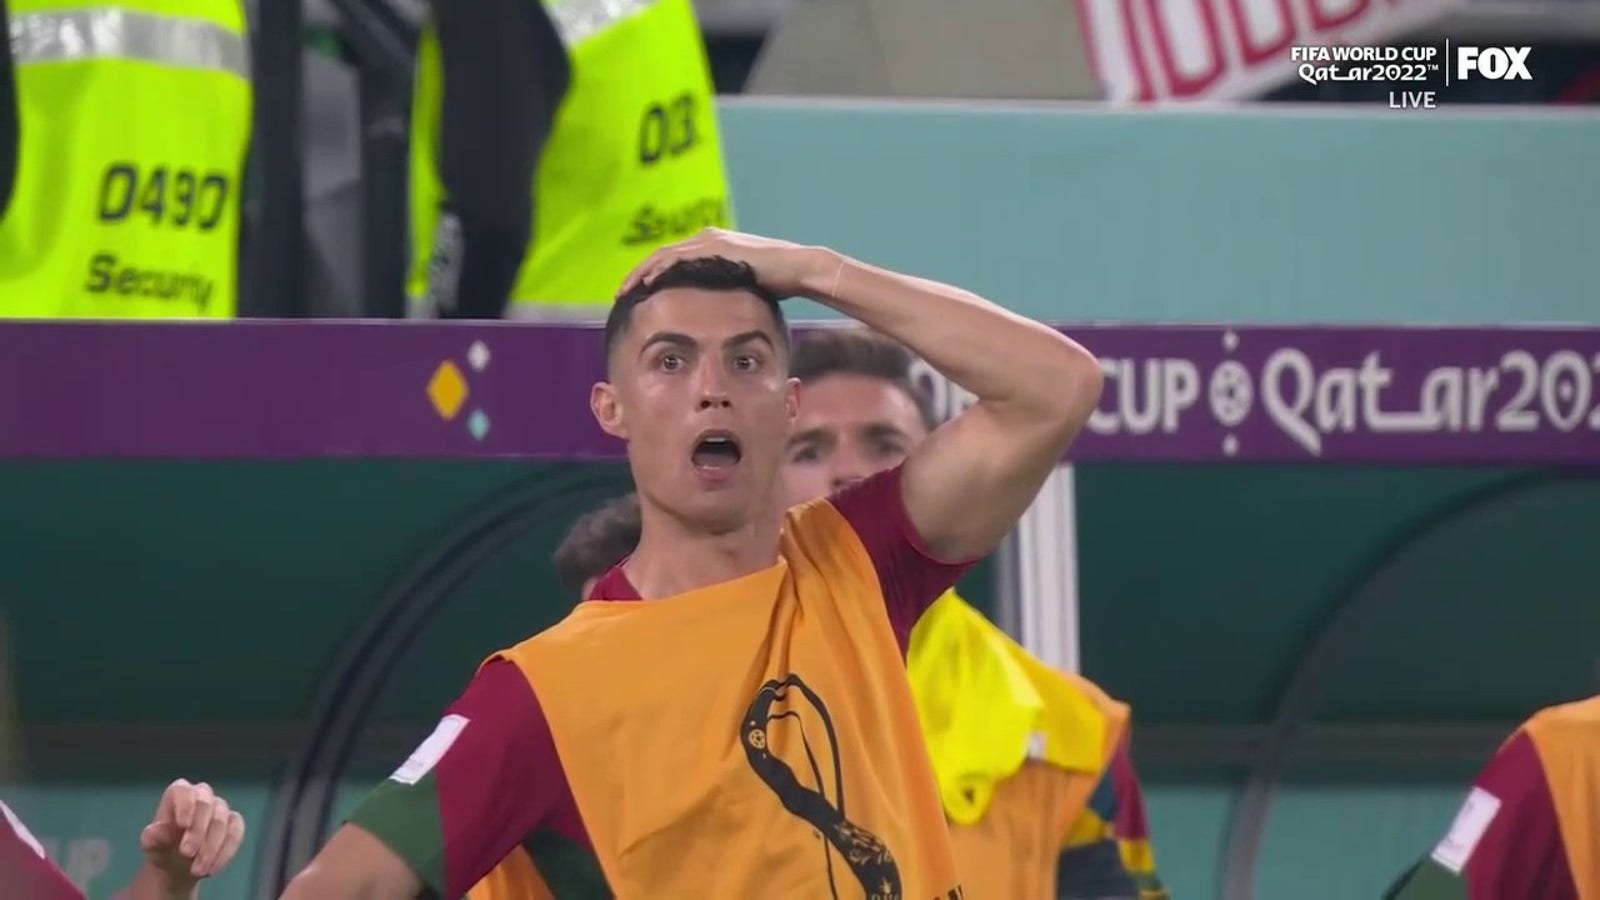 Gana pode enfrentar Portugal após uma falta no final do jogo de Diogo Costa.